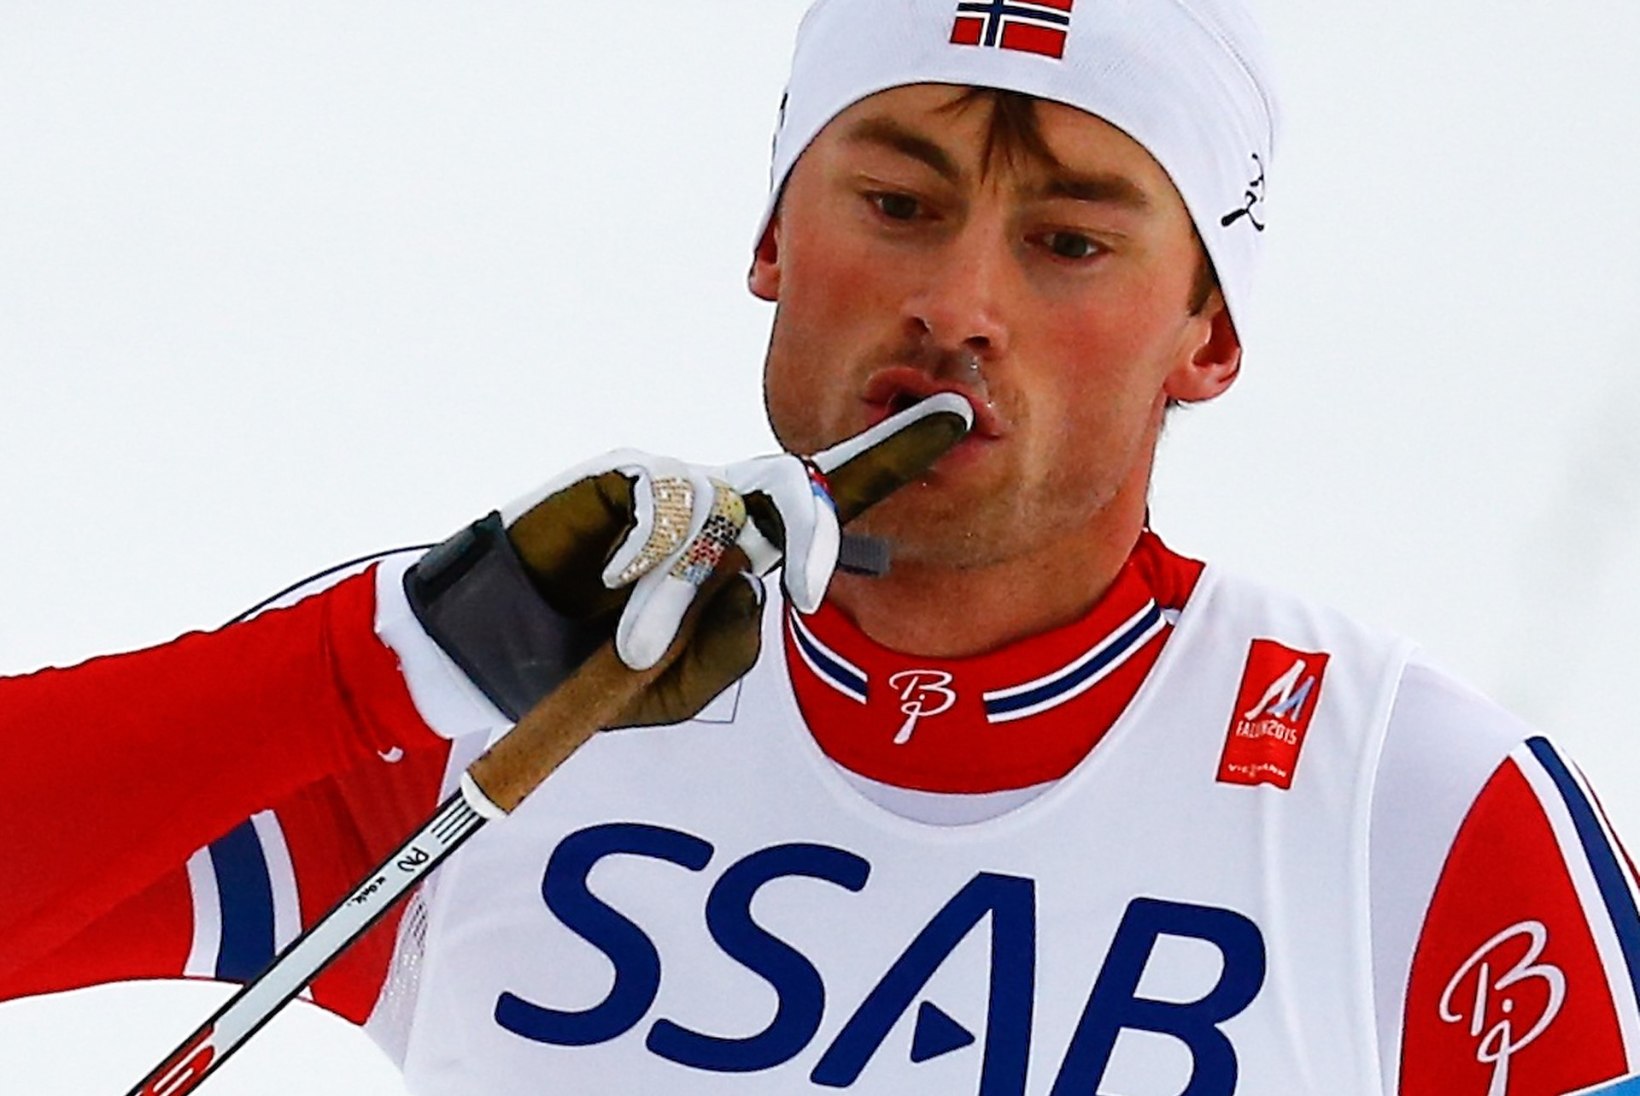 Norra kinnitas oma üleolekut kolmikvõiduga